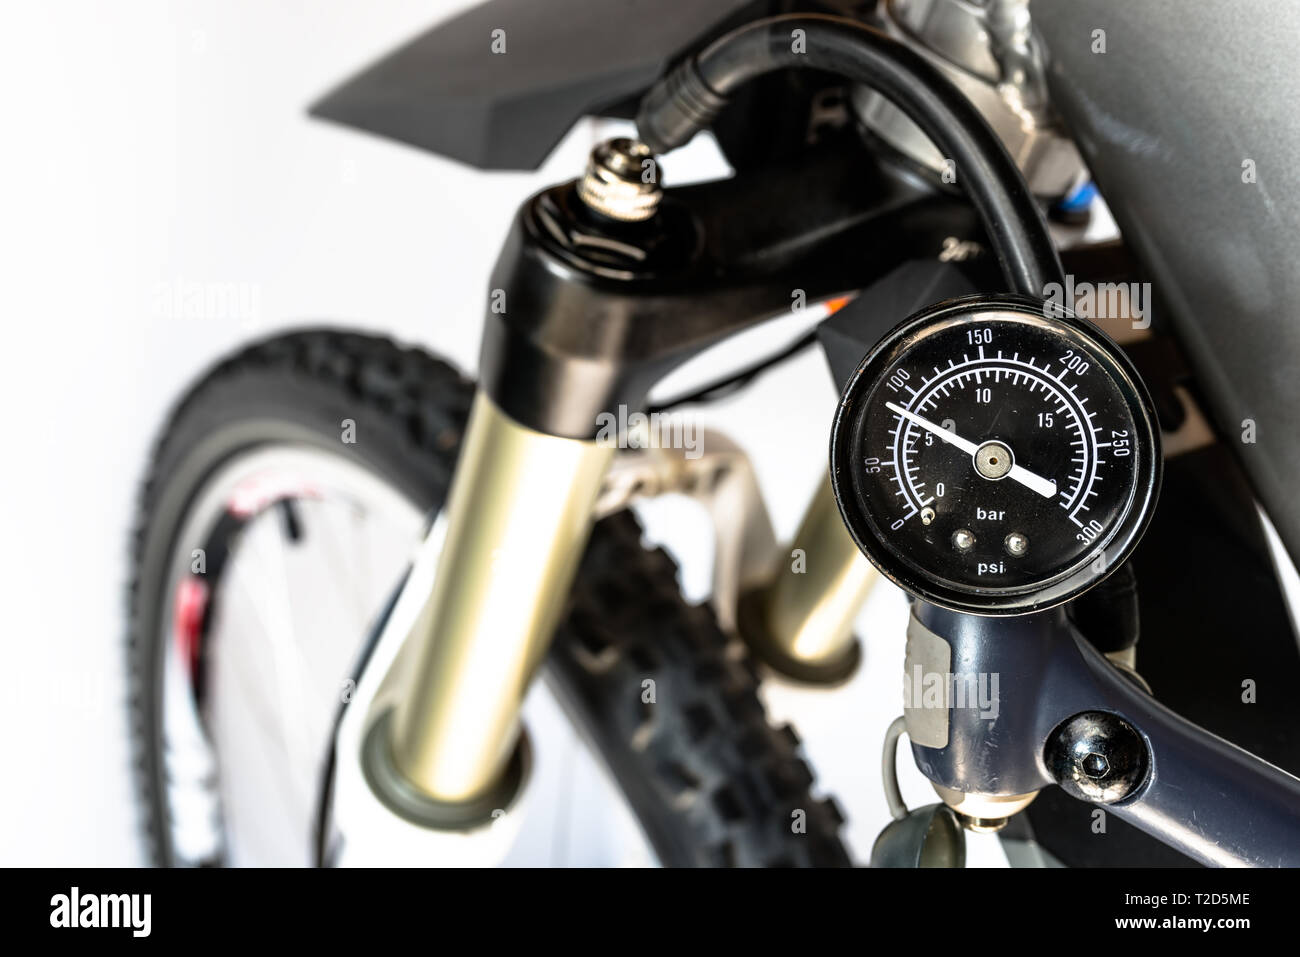 Pumpen von der Vorderseite, Fahrradverleih, Öl-Stoßdämpfer mit einer spezialisierten Handpumpe, sichtbar Druck Anzeige in Einheiten von bar/psi. Stockfoto